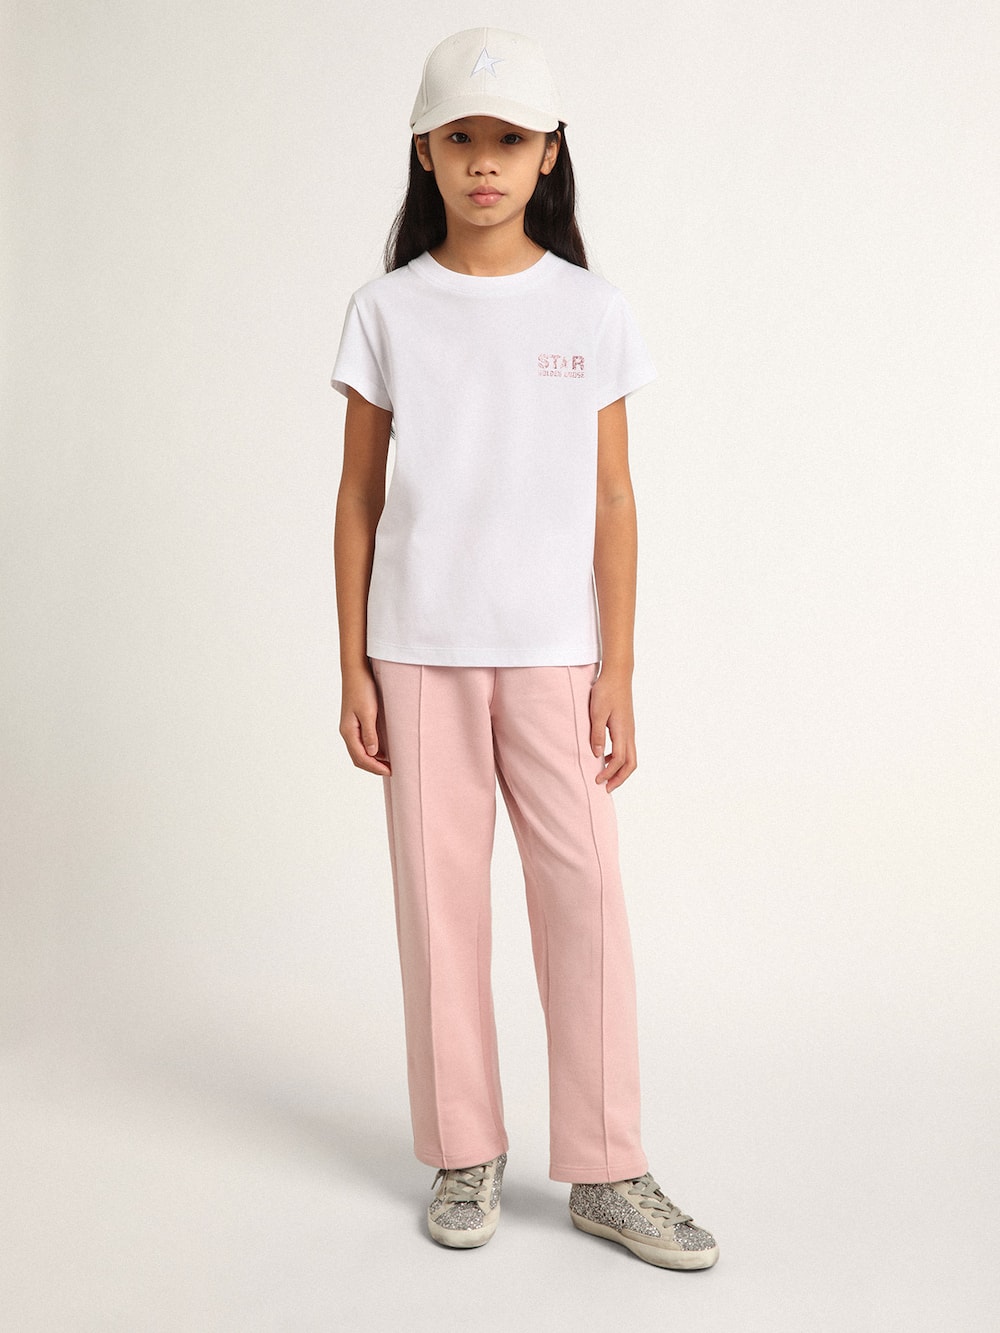 Golden Goose - Camiseta blanca de niña con logotipo y maxiestrella en purpurina rosa in 